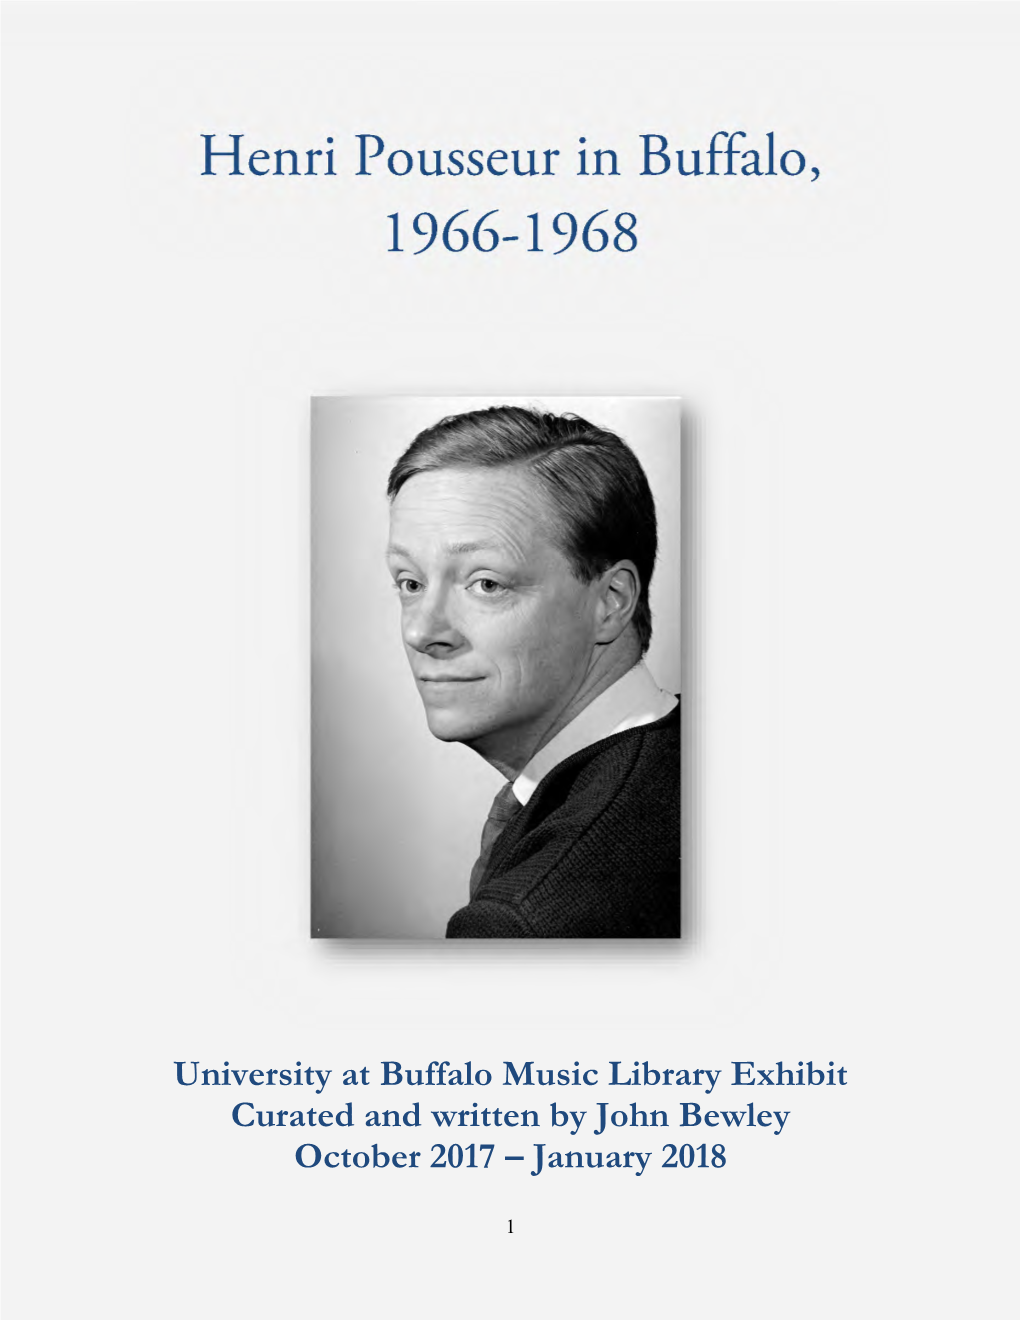 Henri Pousseur in Buffalo 1966 to 1968